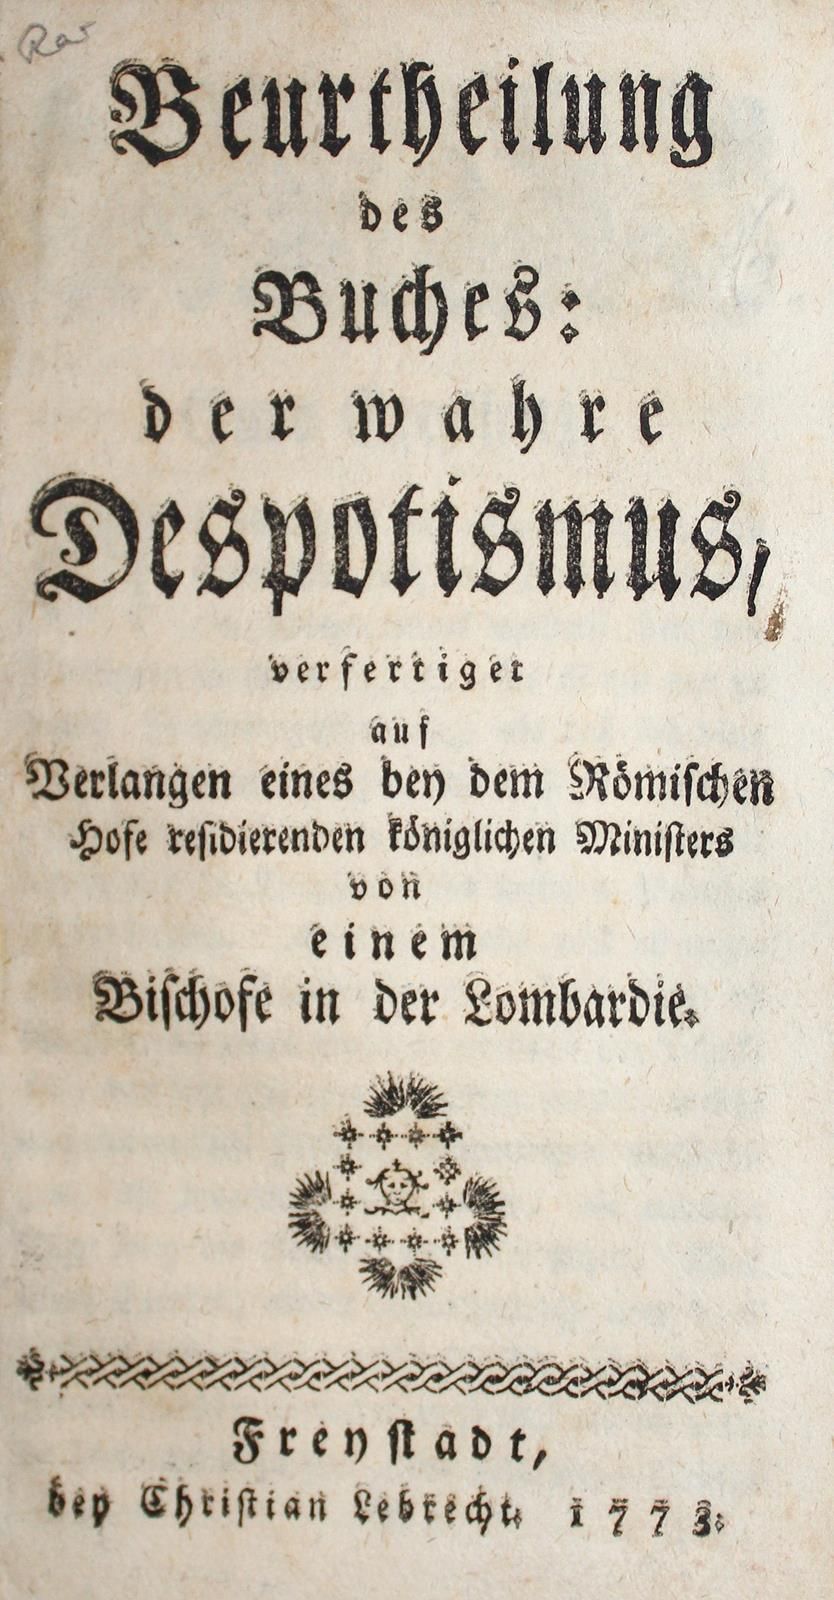 Beurtheilung of the book der wahre Despotismus, verfertigt auf Verlangen eines b&hellip;